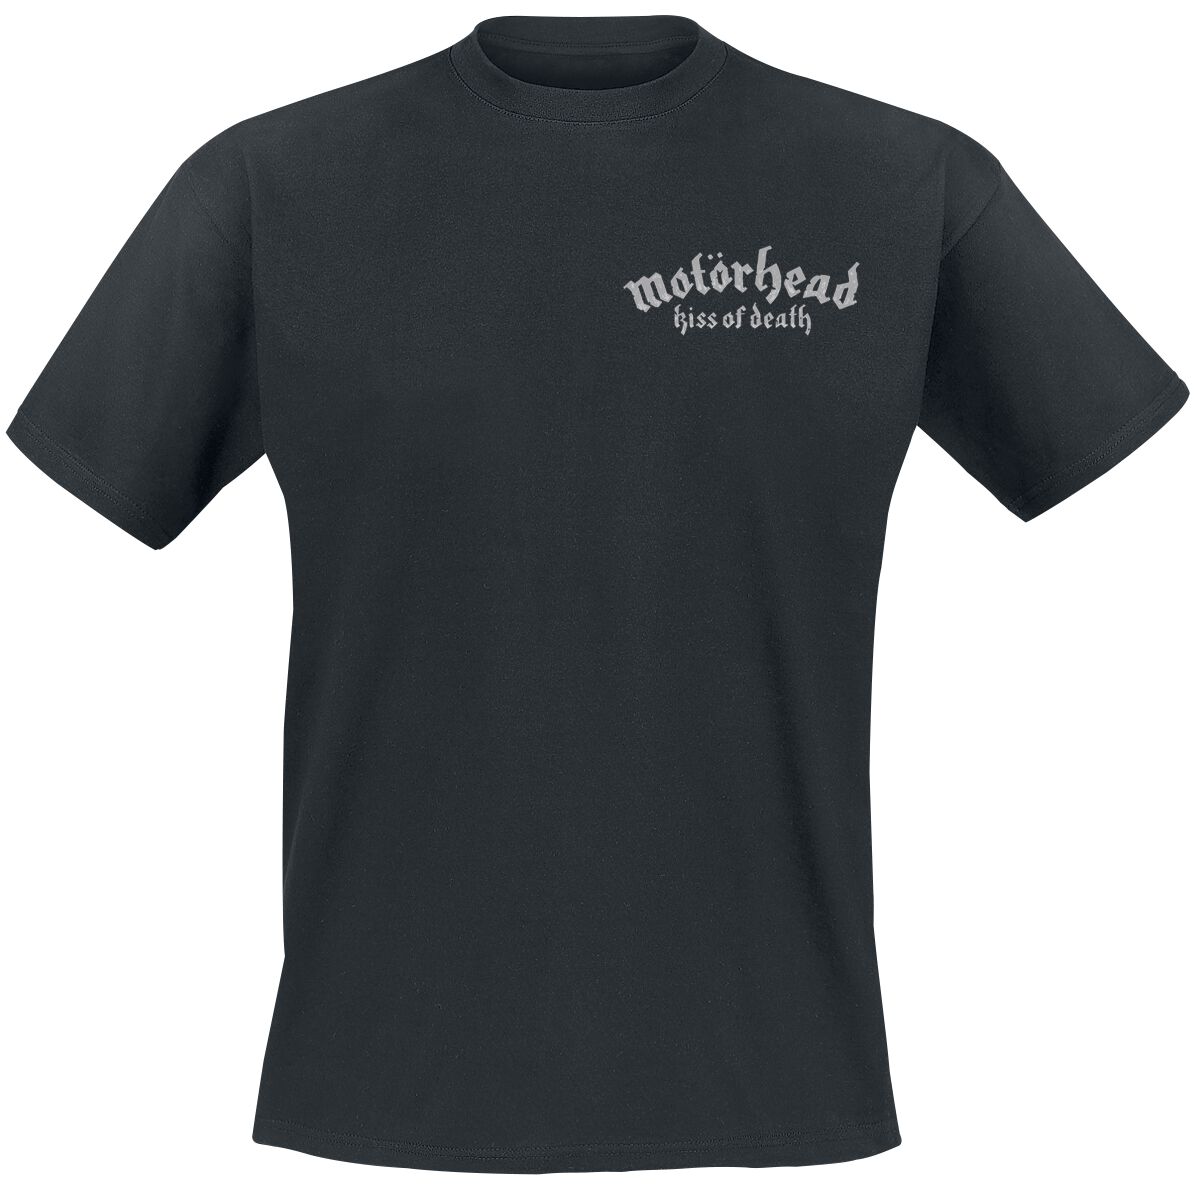 Motörhead T-Shirt - Kiss Of Death Bullet Circle V2 - S bis 4XL - für Männer - Größe 3XL - schwarz  - Lizenziertes Merchandise!